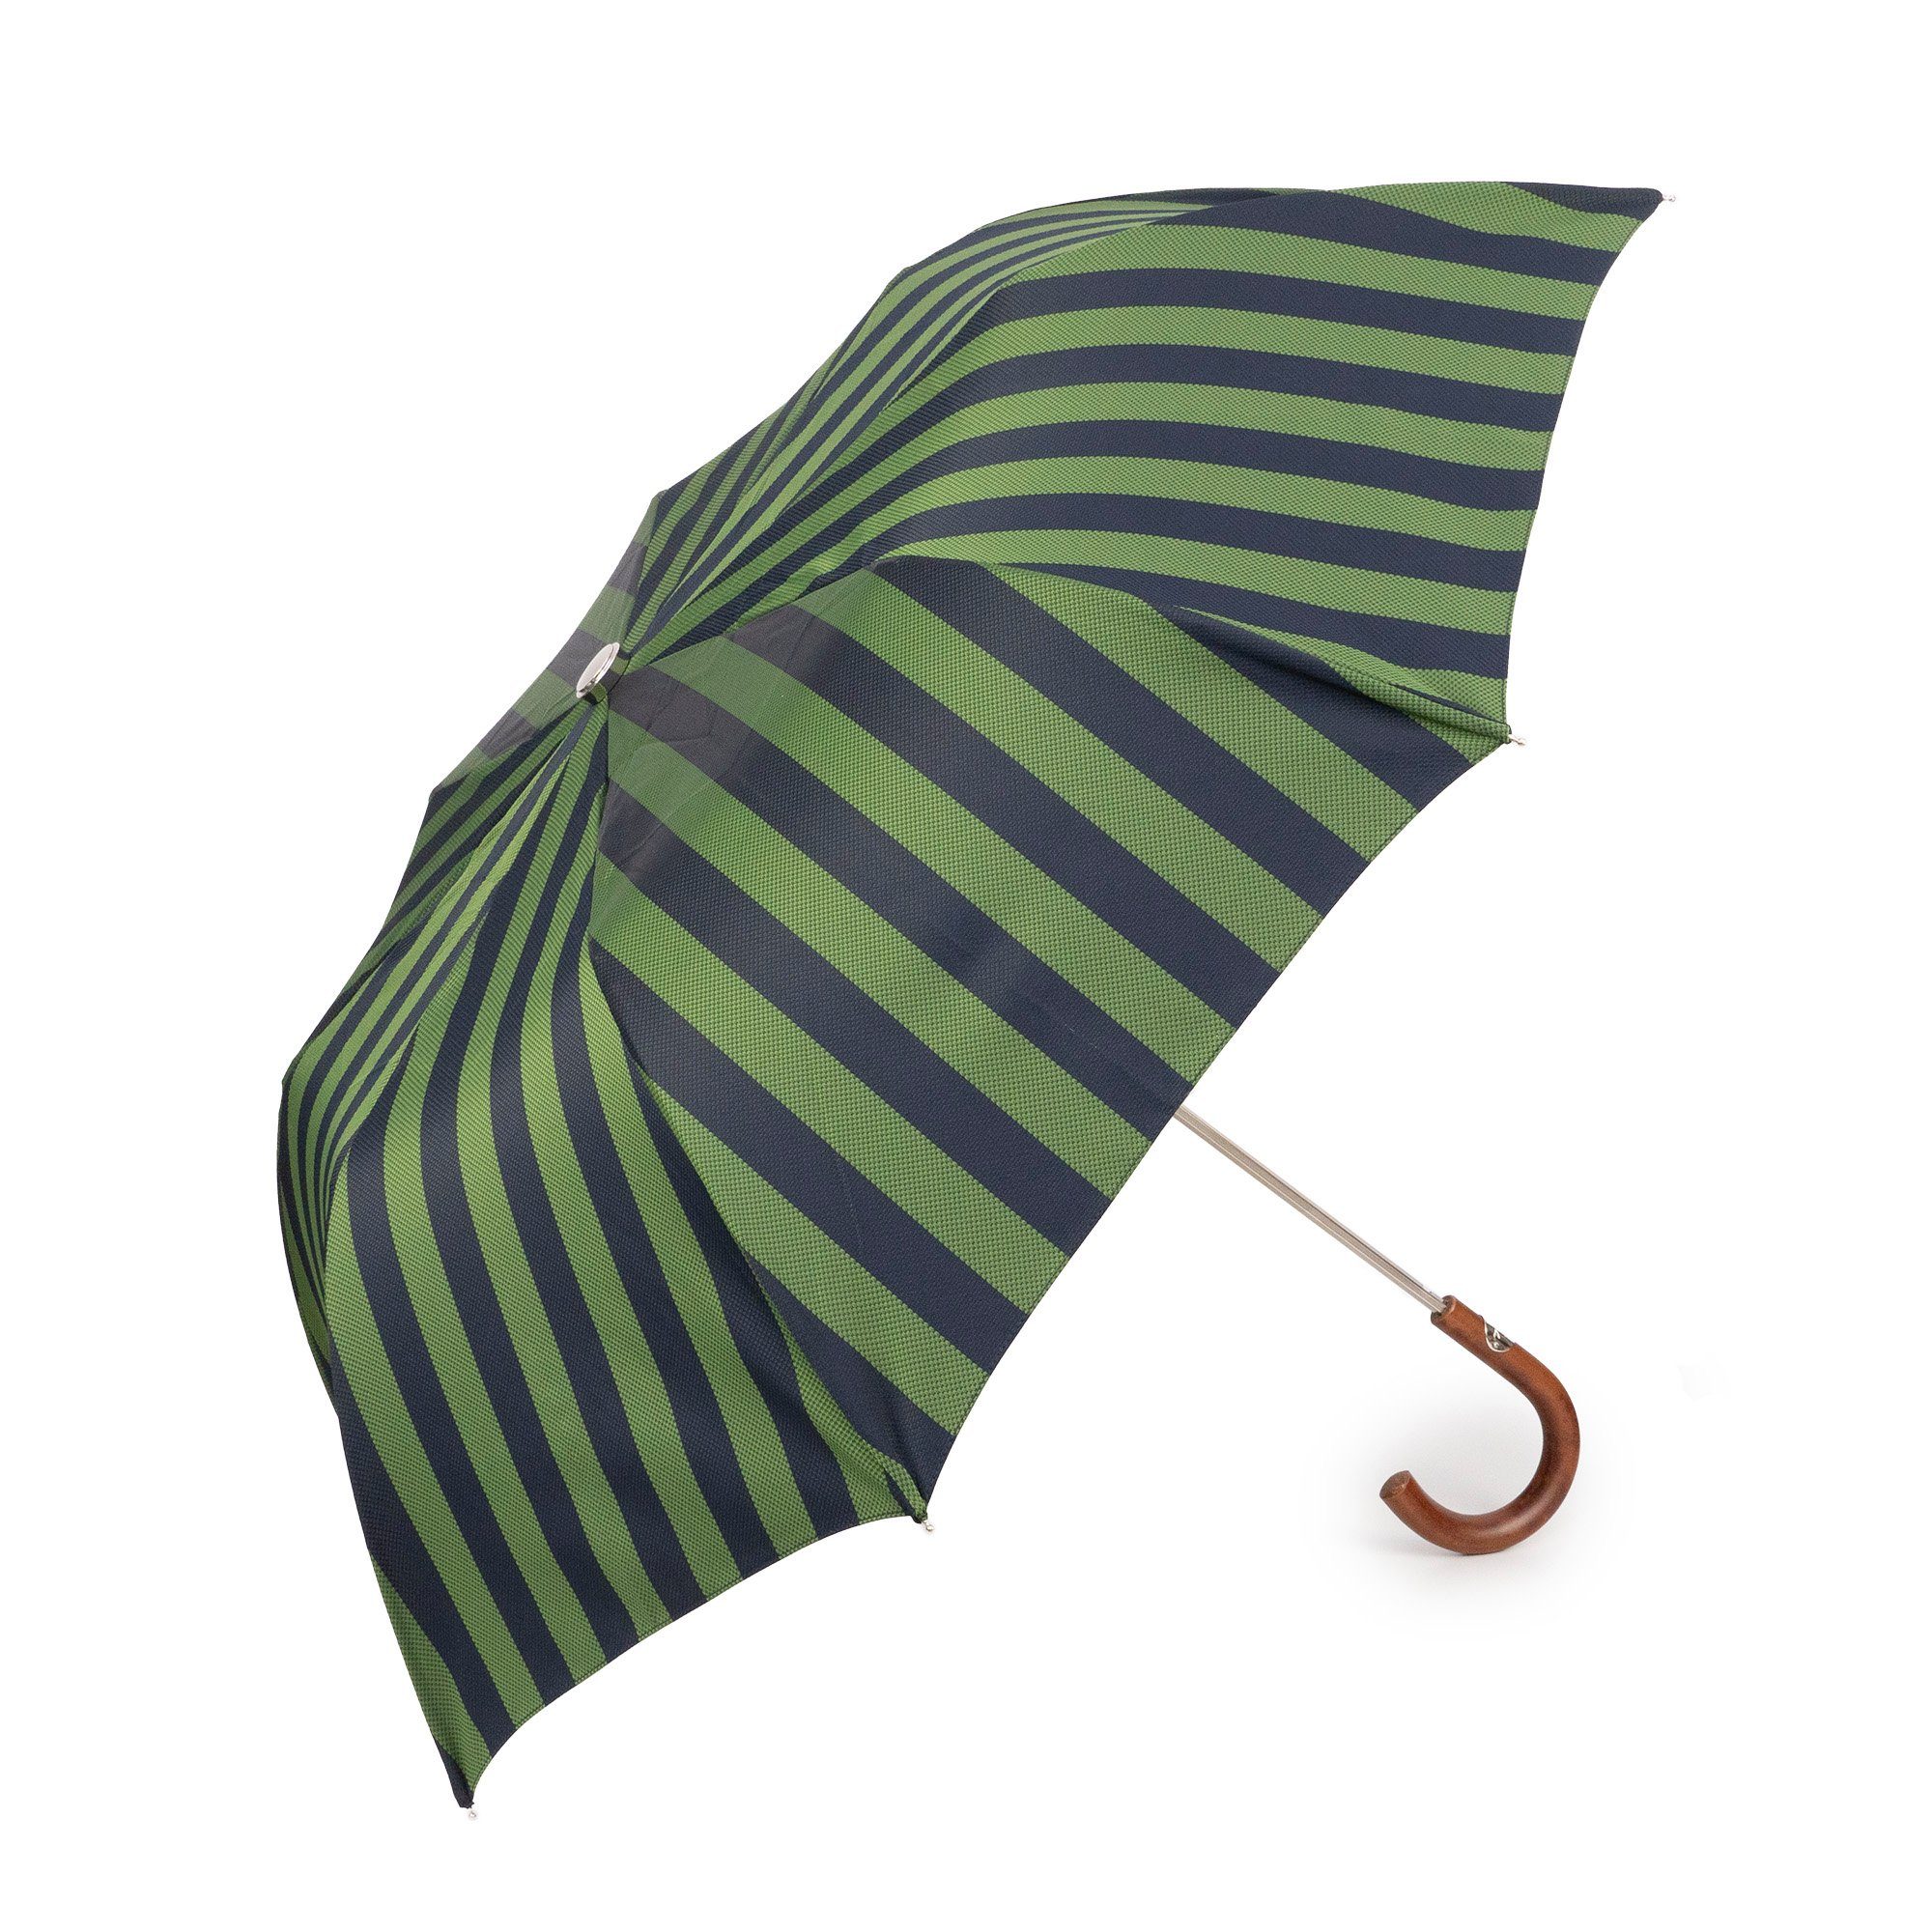 grün, Handmade Holzgriff, Luxus-Regenschirm, Francesco Taschenregenschirm, Maglia Italy in gestreift,